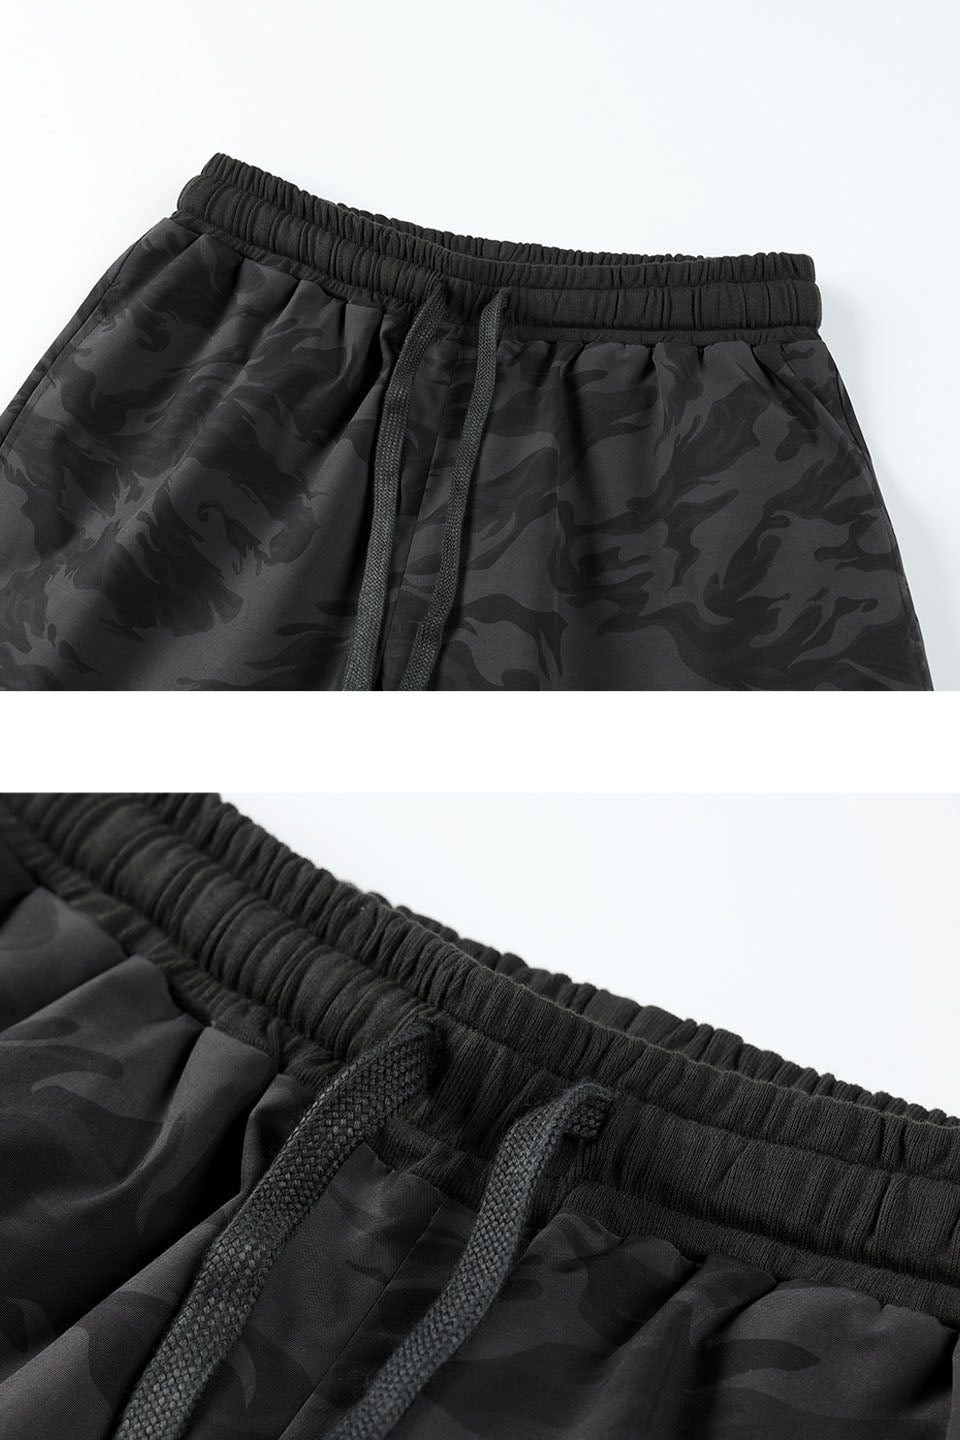 Camouflage Nylon Shorts